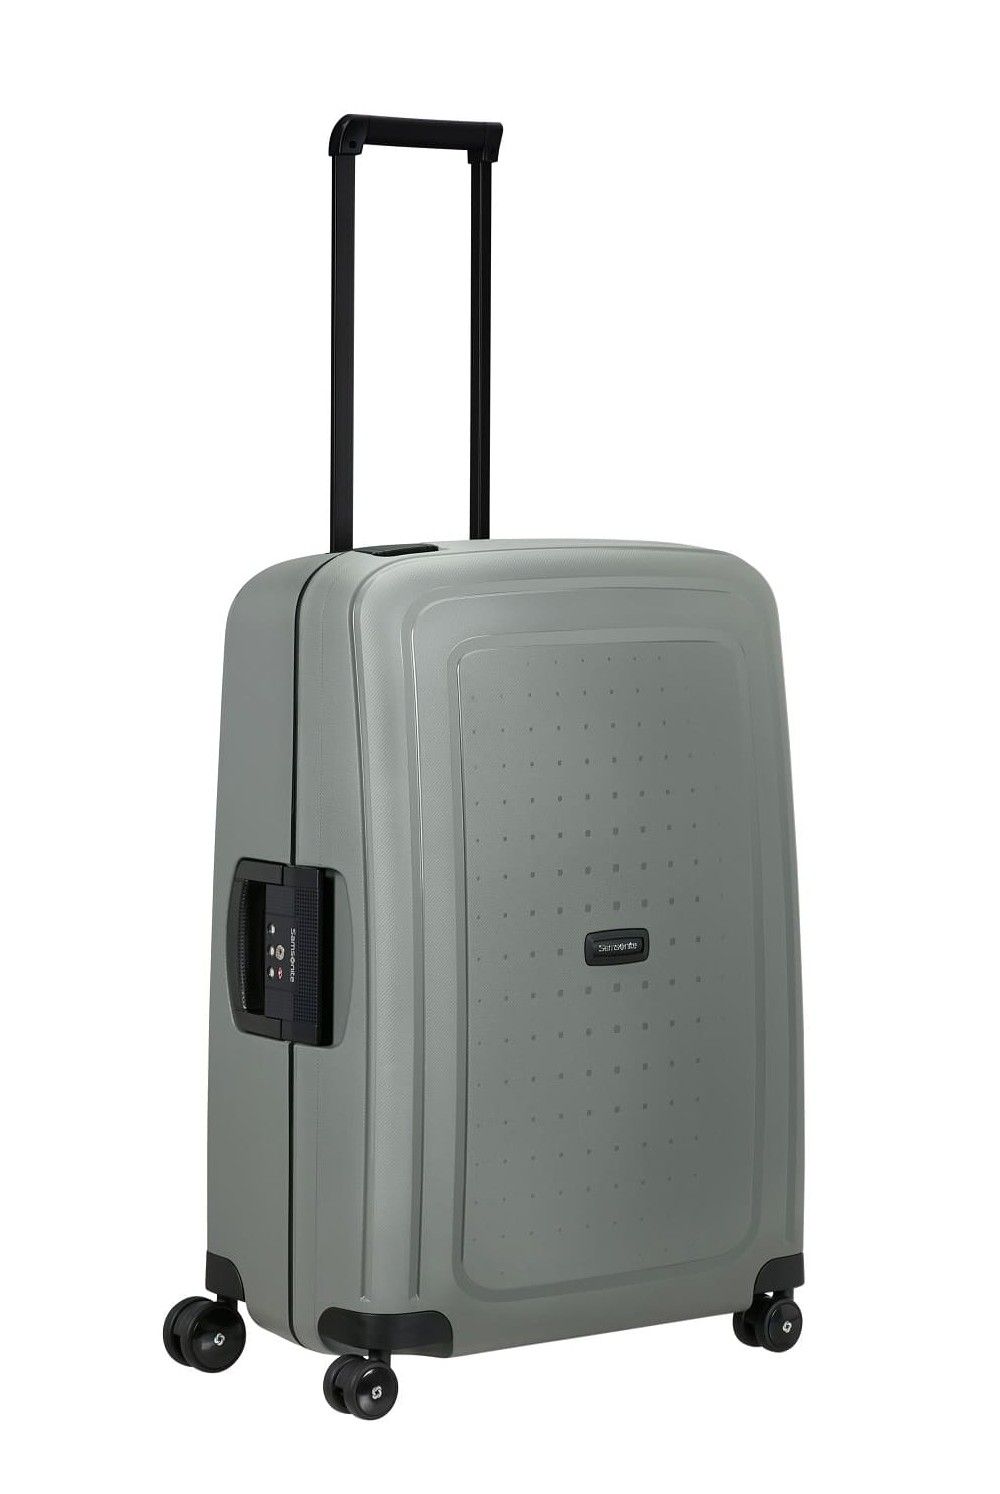 Samsonite S Cure Eco Post Consumer Koffer 69cm 79Liter 4 Rollen | Weichschalenkoffer